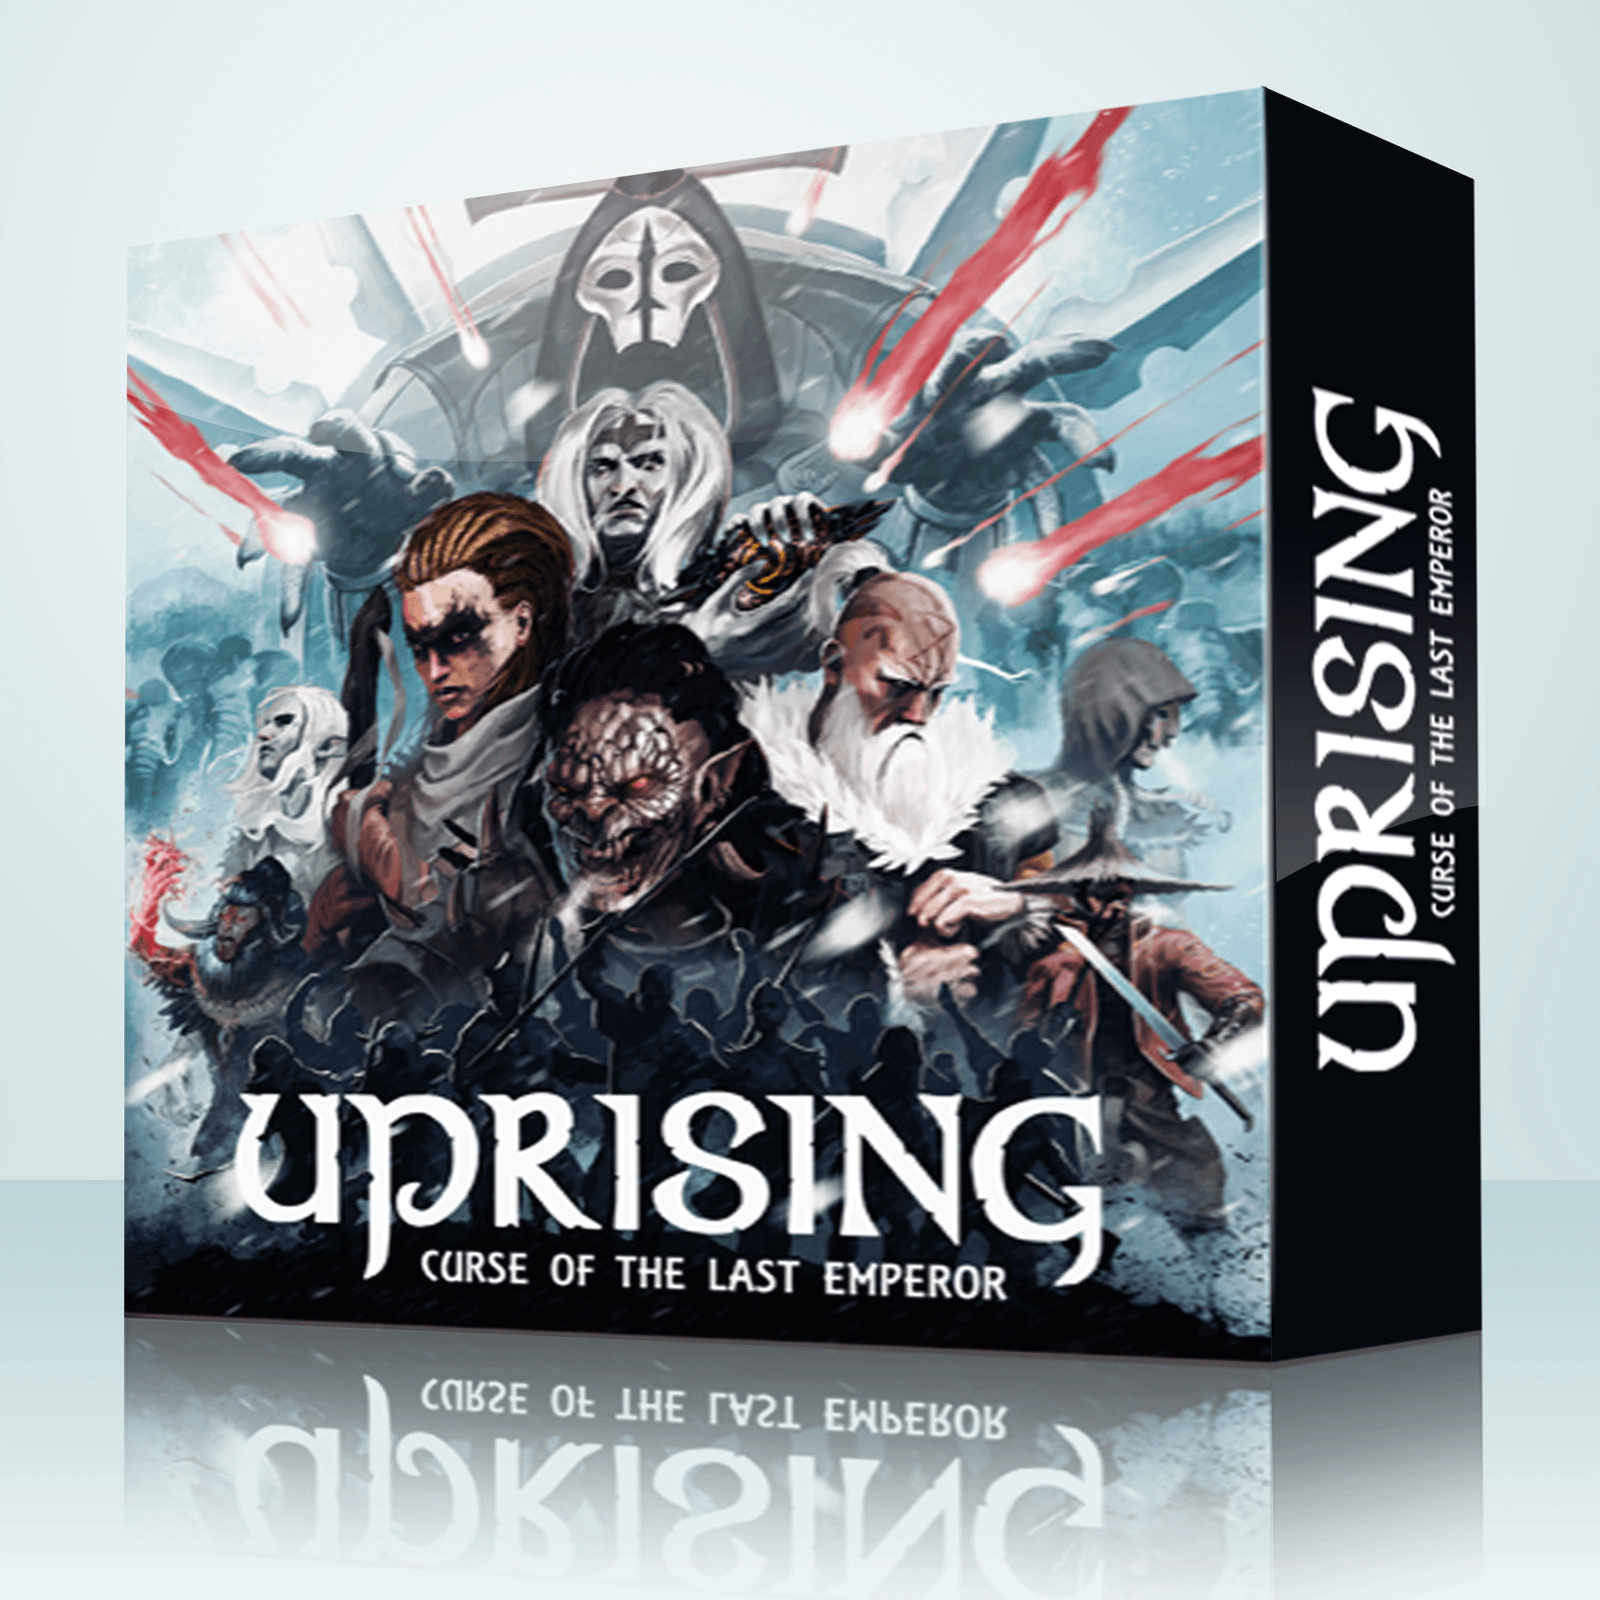 Uprising lanceert op 18 augustus op Kickstarter